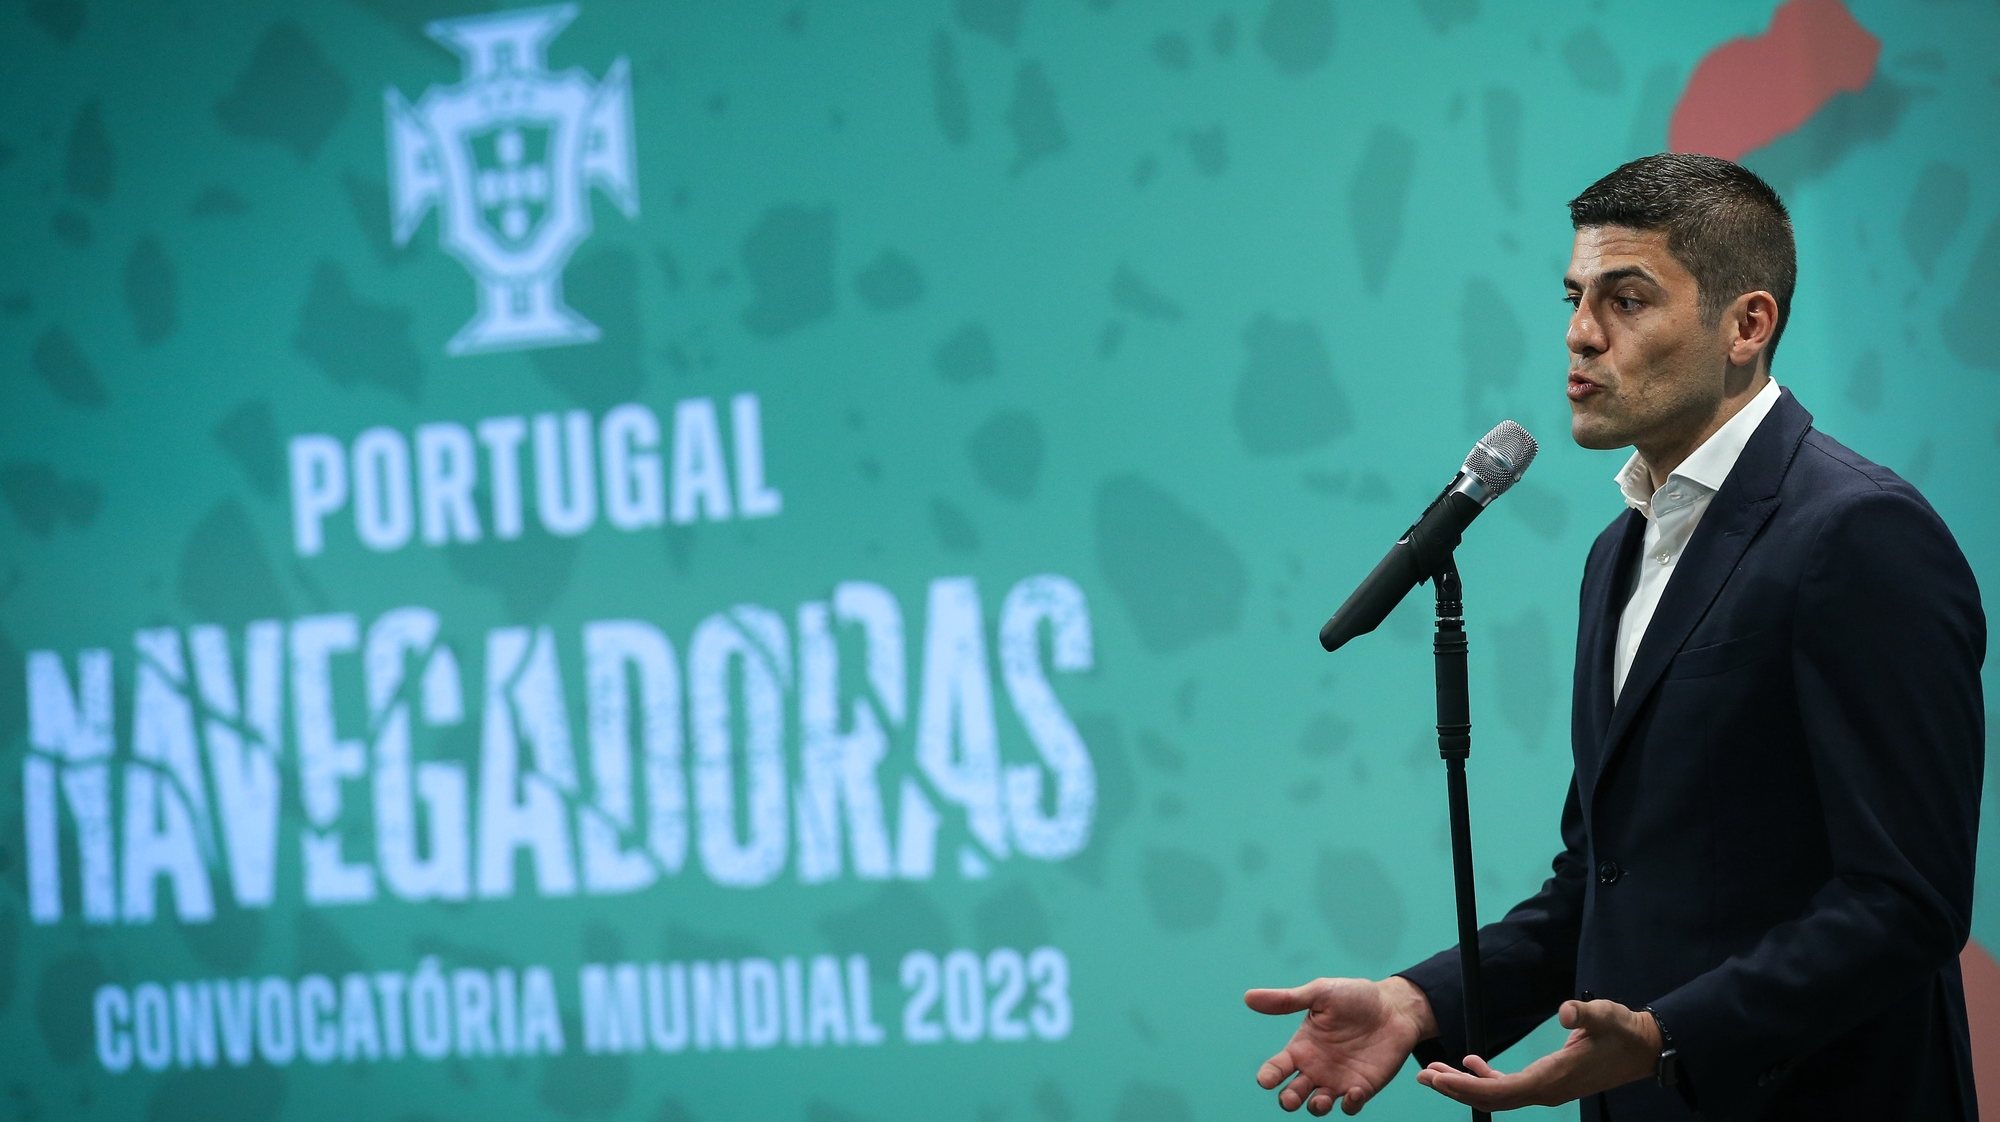 O selecionador português, Francisco Neto, durante uma conferência de imprensa de divulgação dos convocados para o Mundial feminino da Austrália e Nova Zelândia 2023, em Lisboa, 30 de maio 2023.  RODRIGO ANTUNES/LUSA